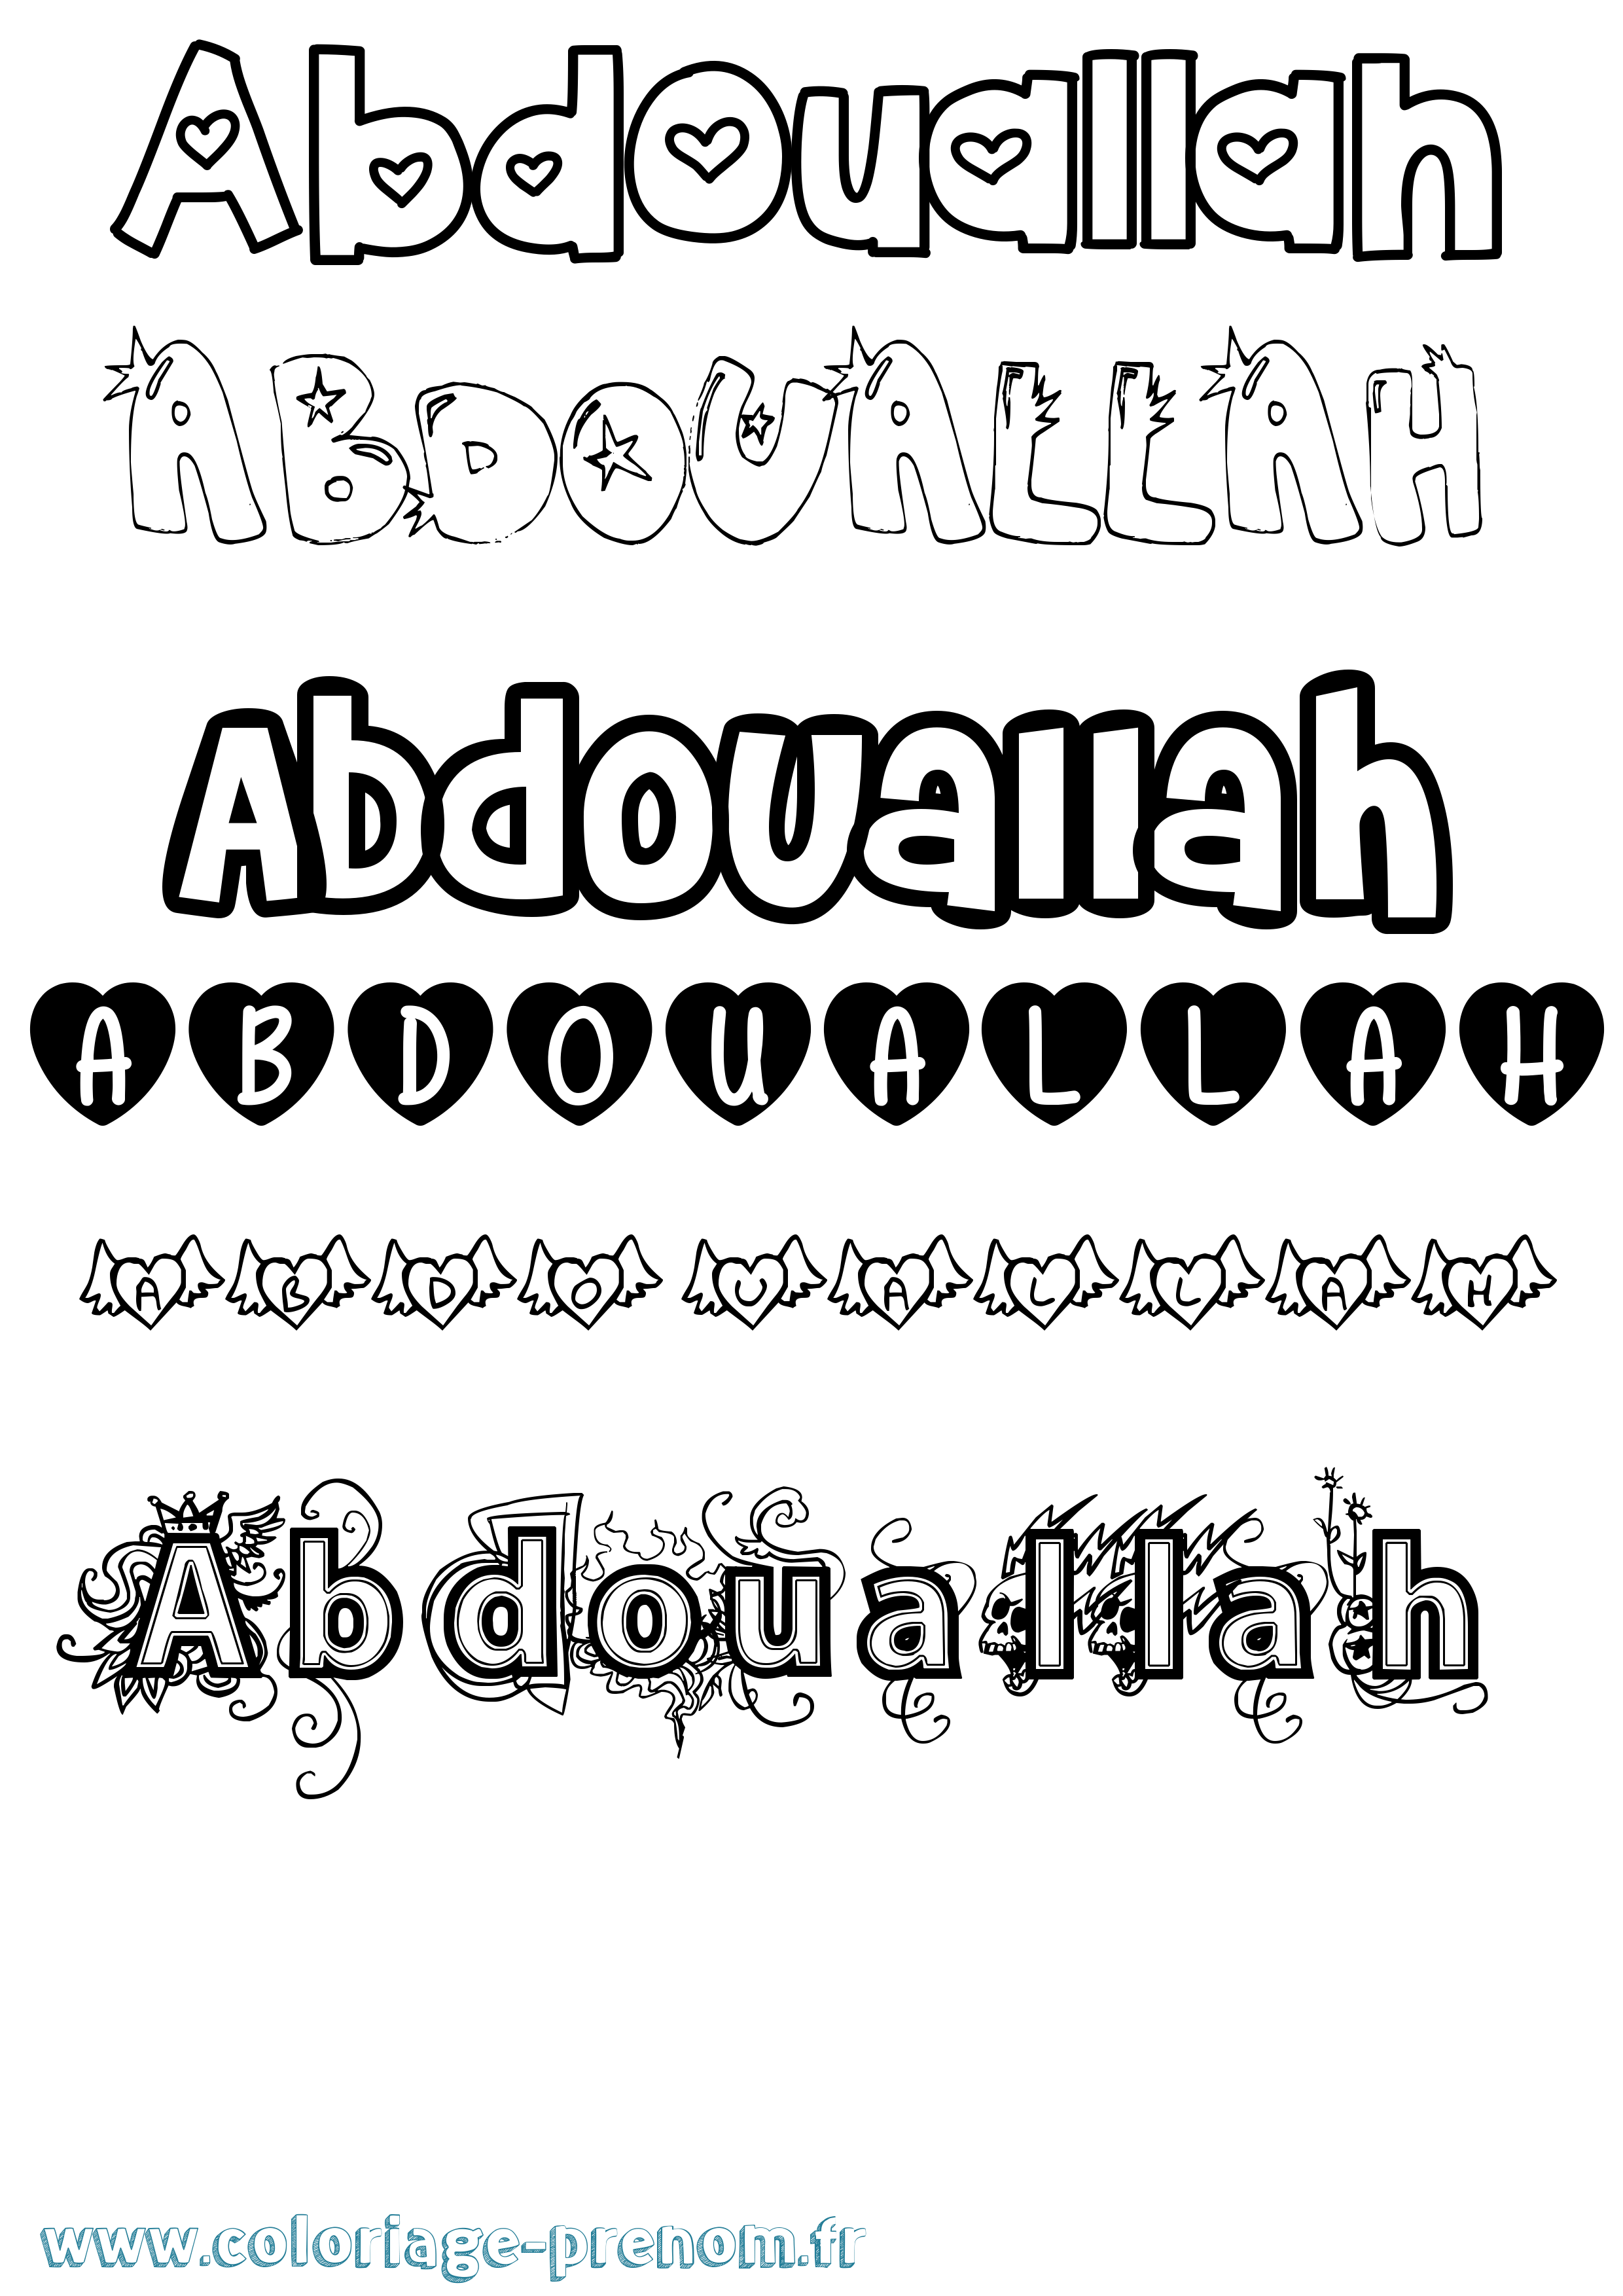 Coloriage prénom Abdouallah Girly